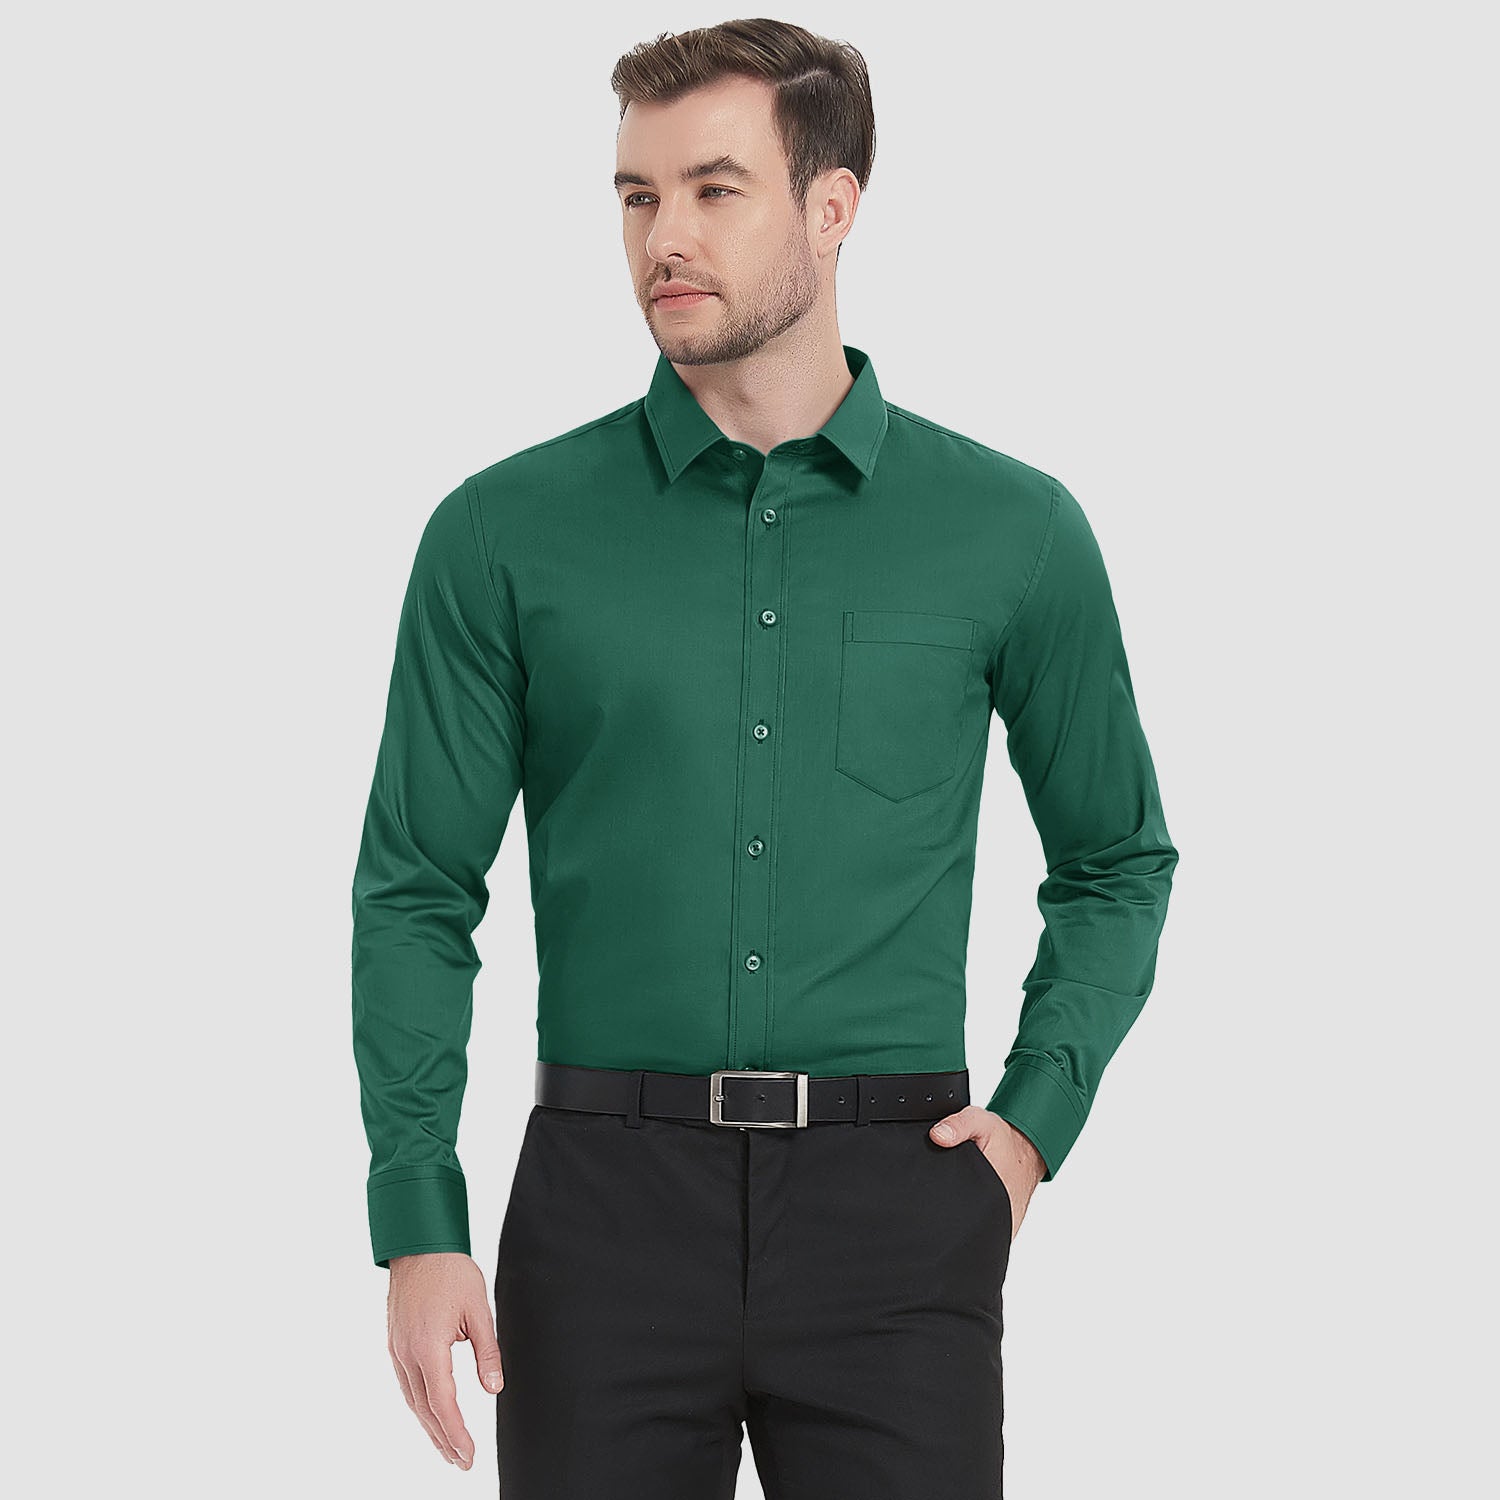 Men's Long Sleeve Dress Shirts Regular Fit Business Shirt